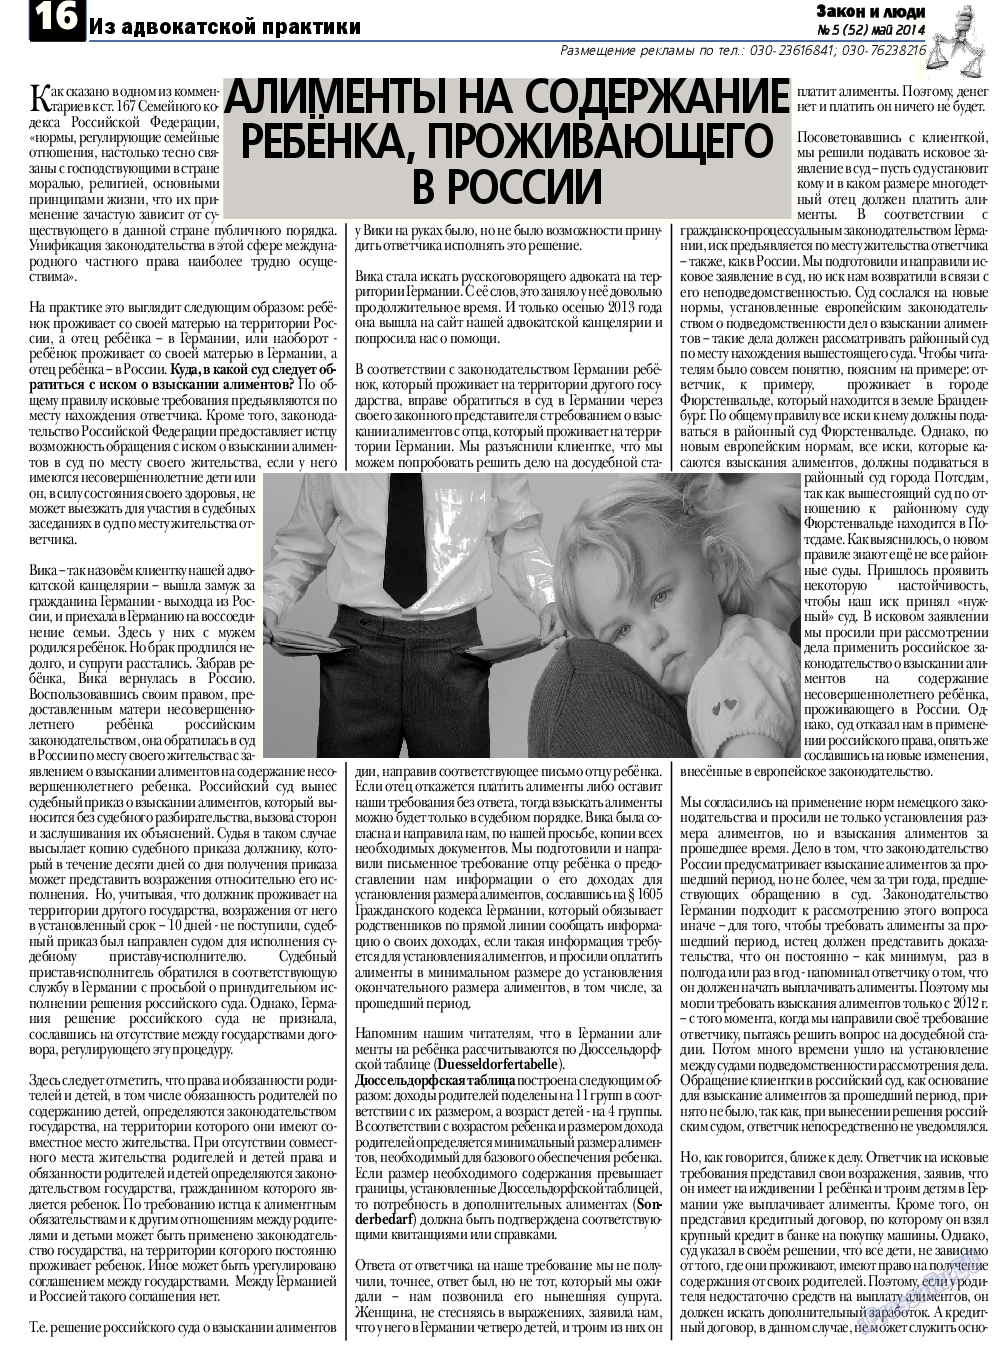 Закон и люди, газета. 2014 №5 стр.16